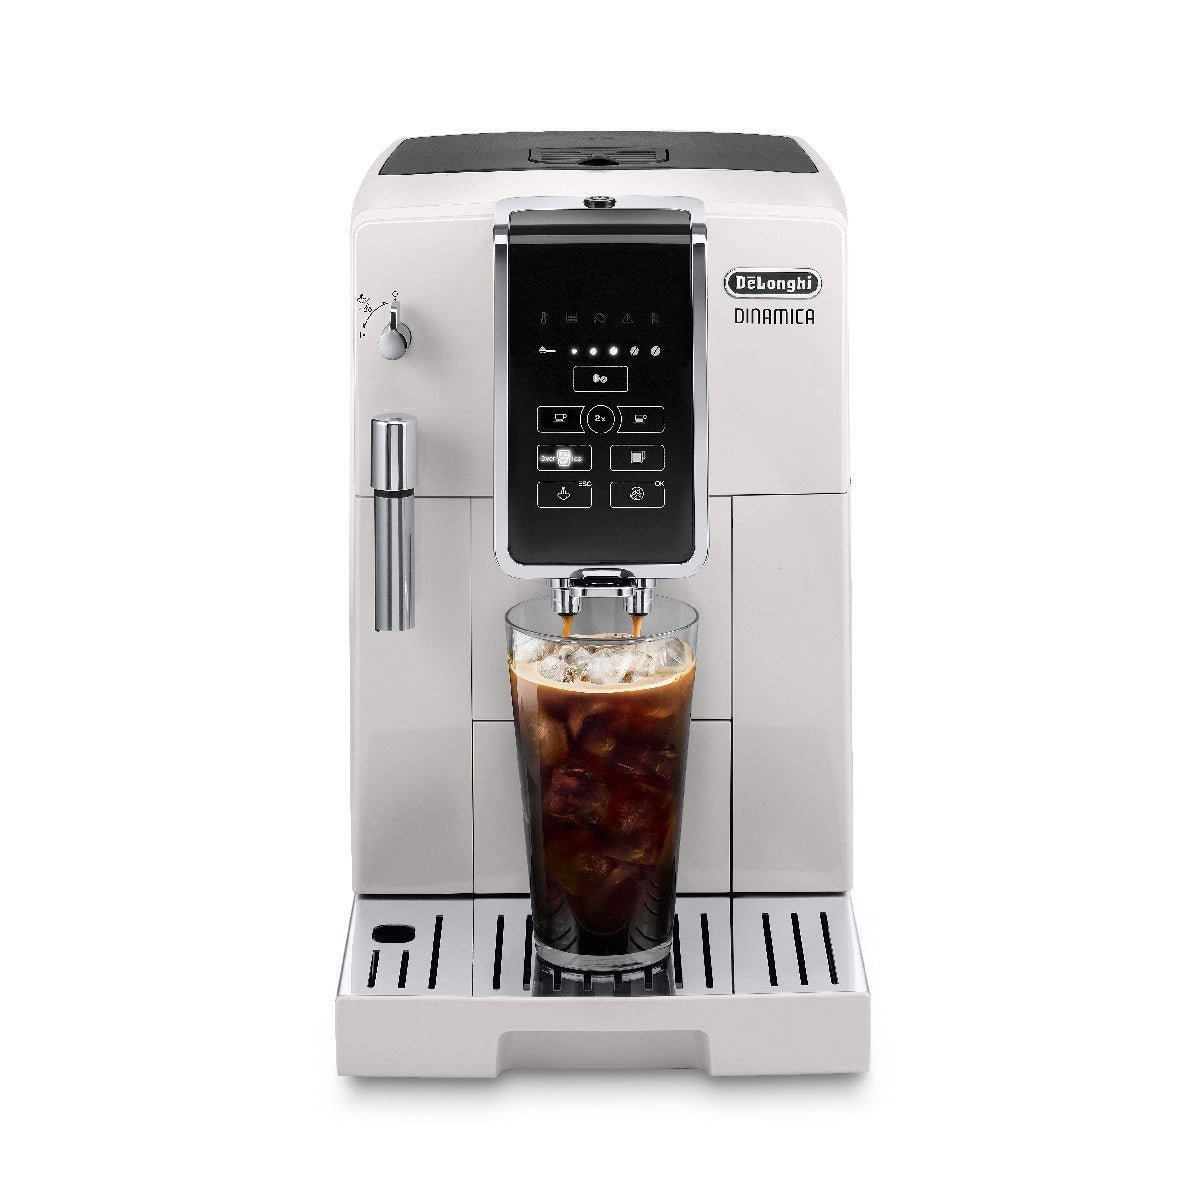 DeLonghi Dinamica Super Automatic Espresso & Coffee Machine – ECAM35020W (White)